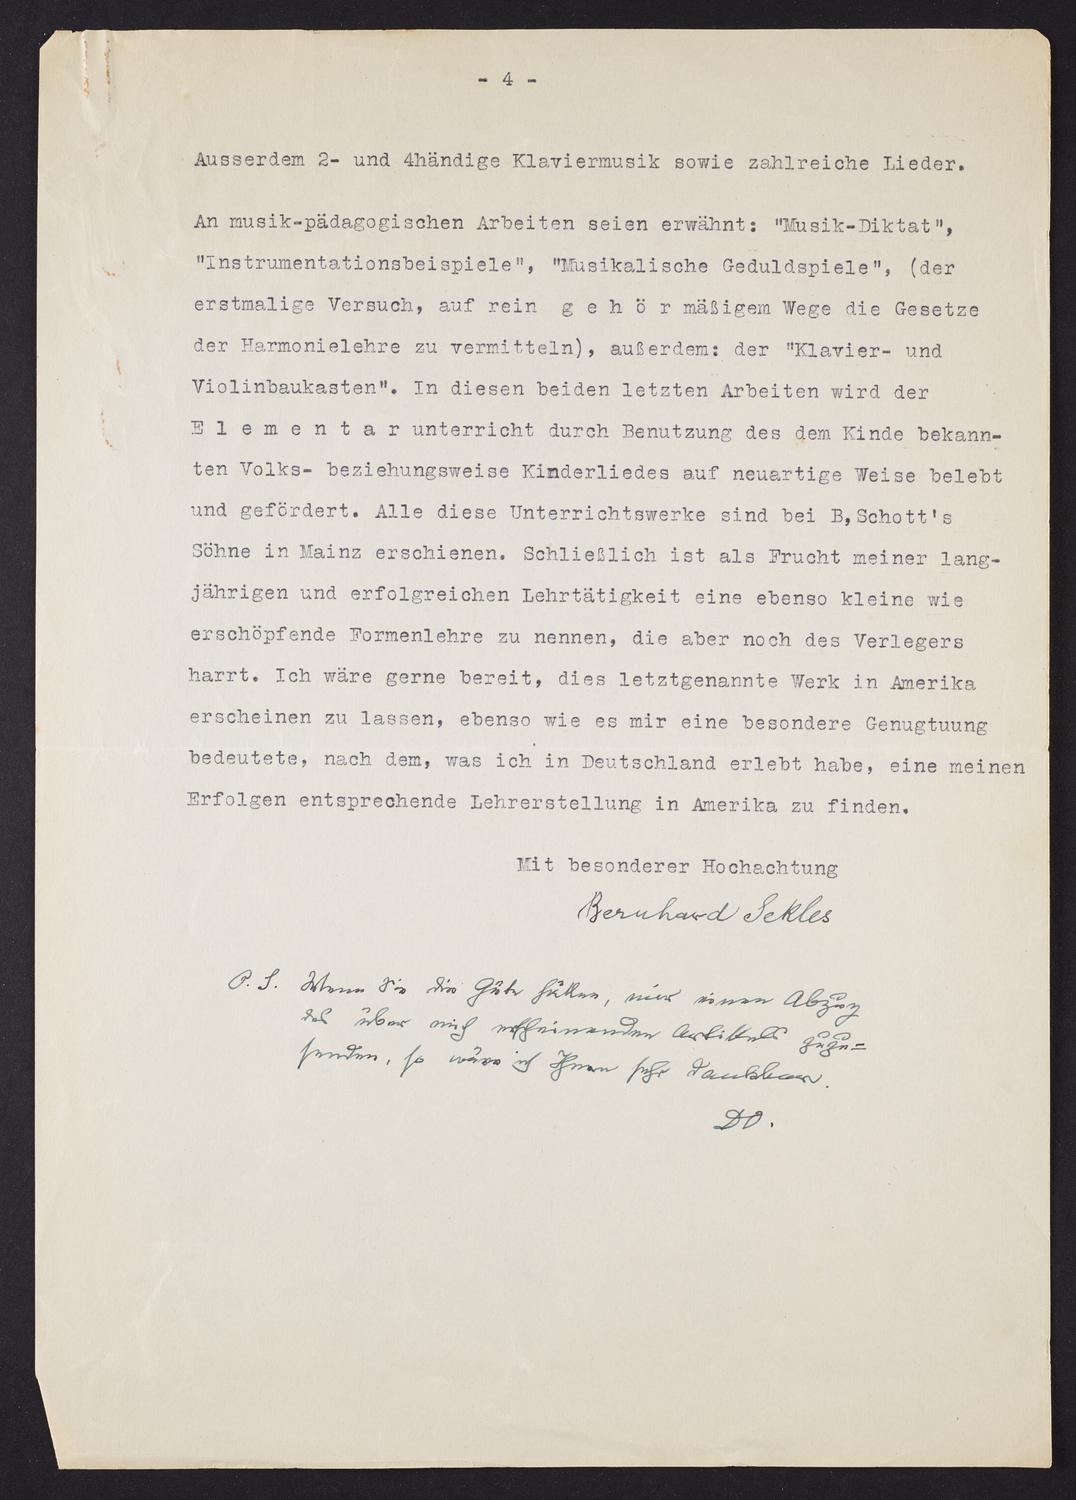 Correspondence from Bernhard Sekles to David Ewen, page 4 of 4